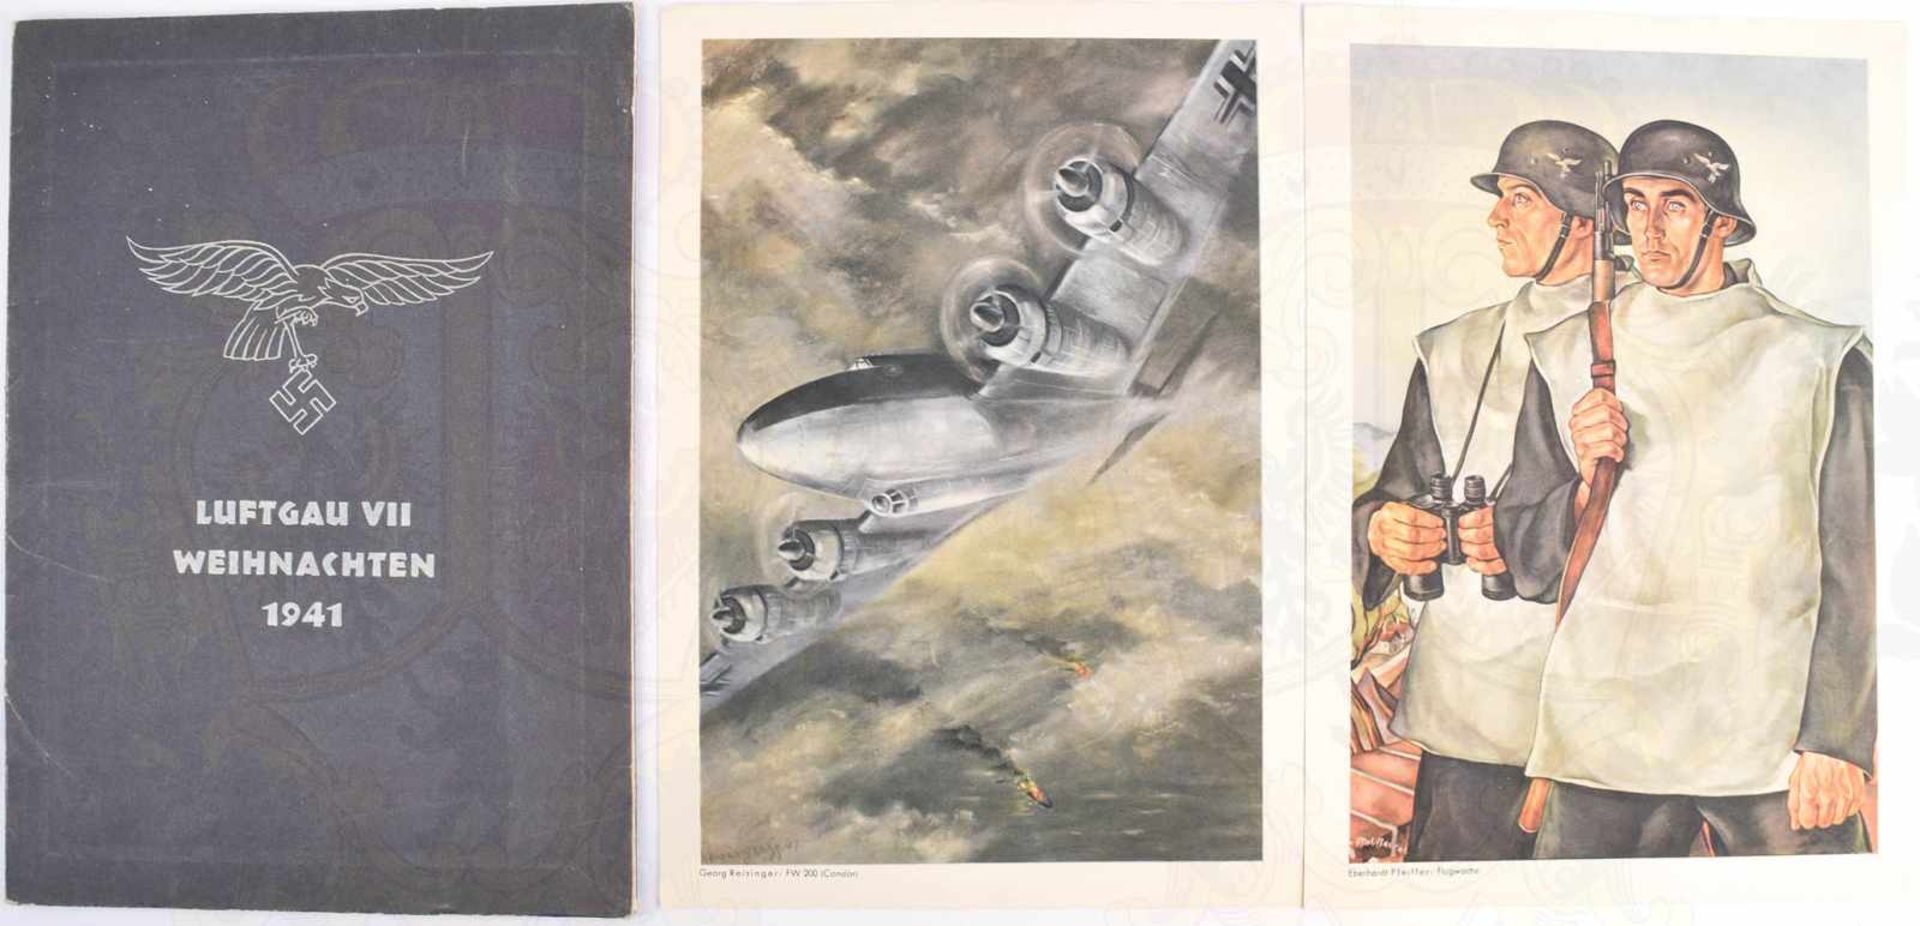 KÜNSTLERMAPPE WEIHNACHTEN 1941 LUFTGAU VII, 12 Kunstdrucke, Fernkampfbomber Focke Wulf 200 im